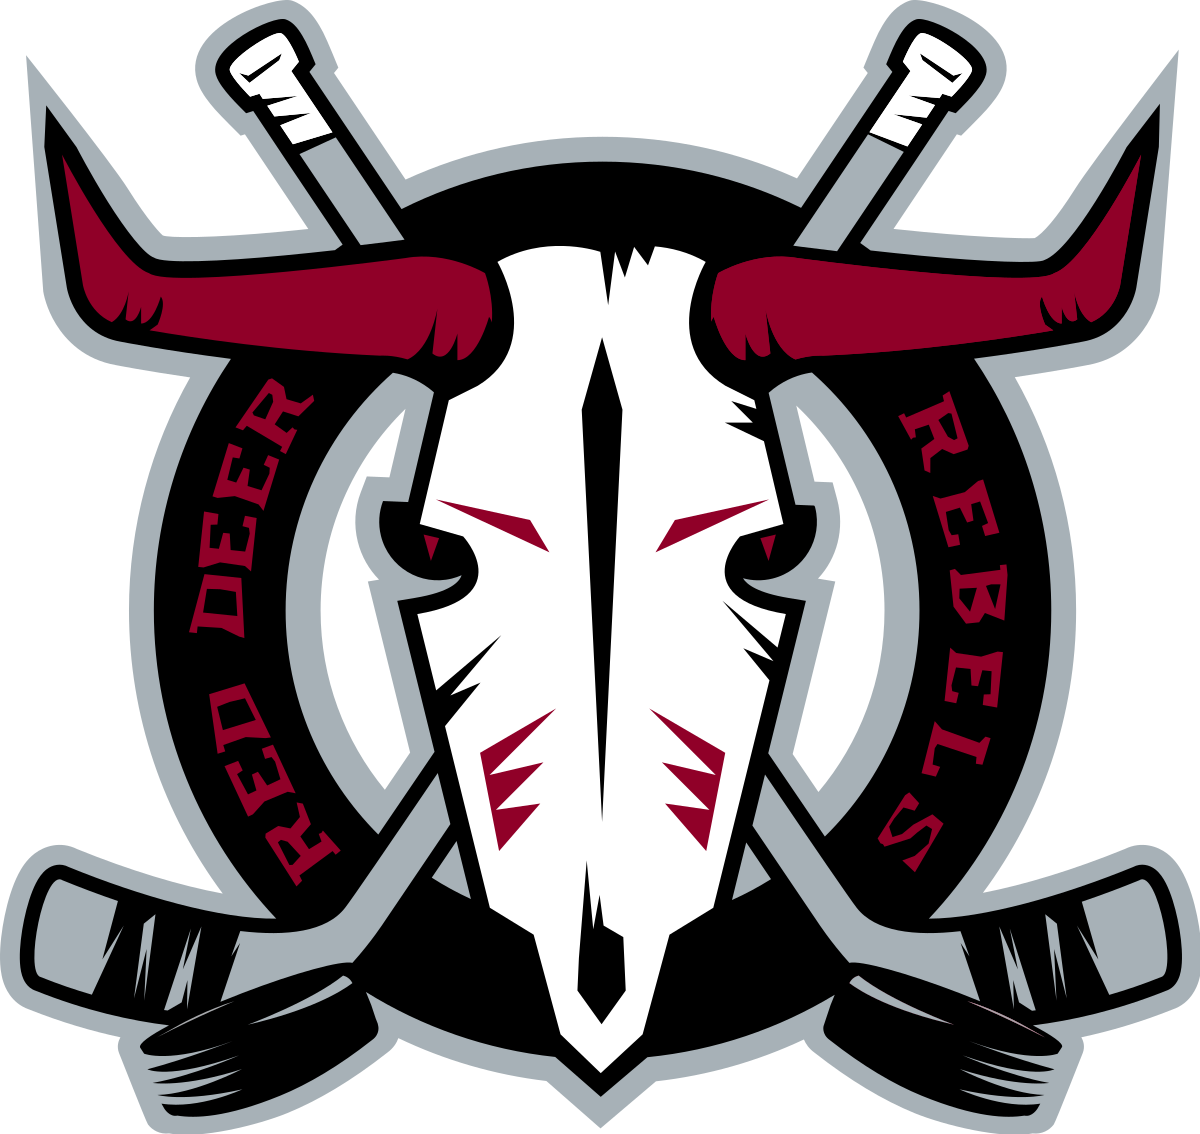 Red Deer Rebels - Wikipedia